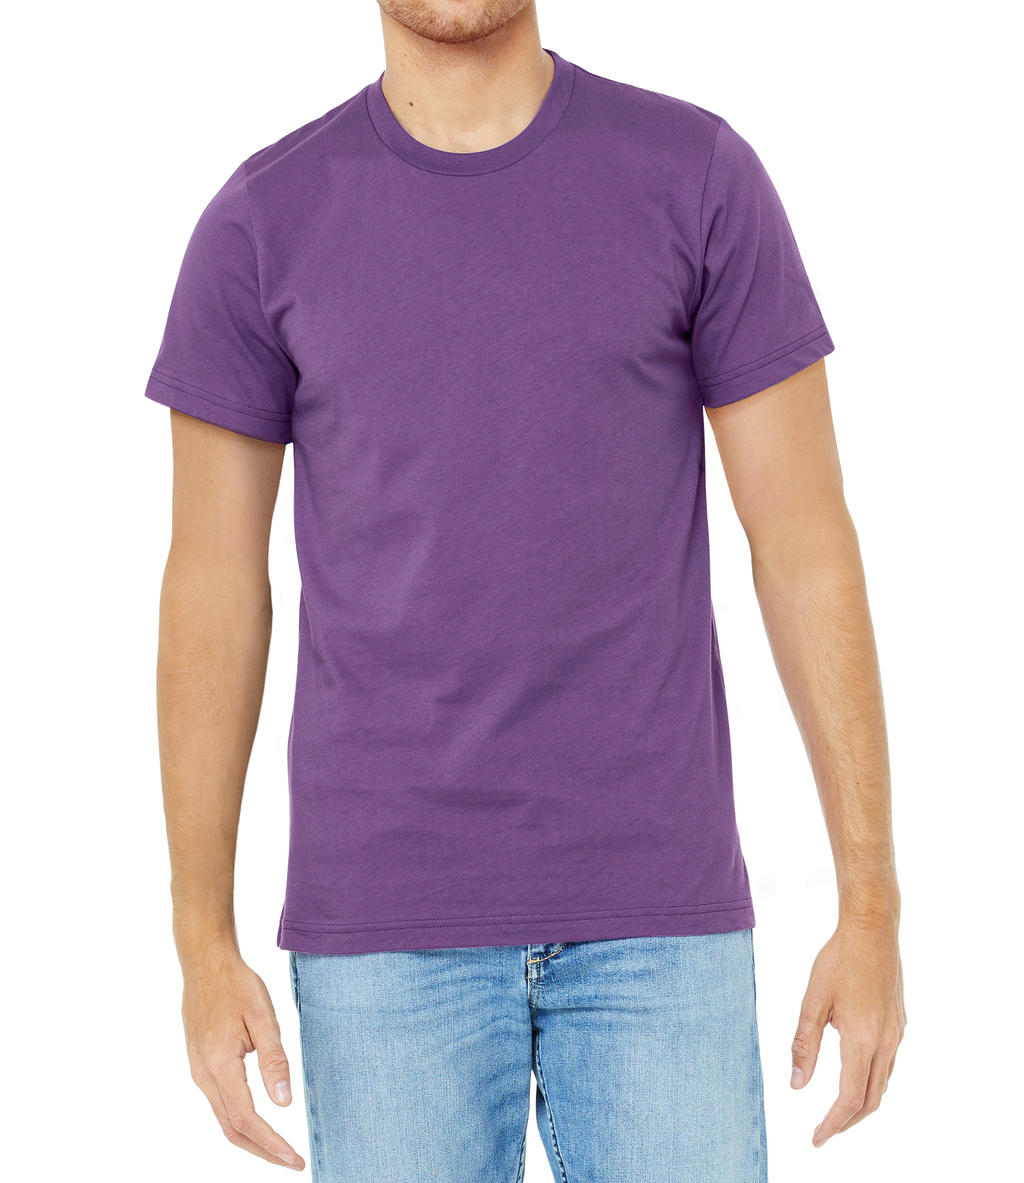 Tričko Bella Jersey - světle fialové, XL